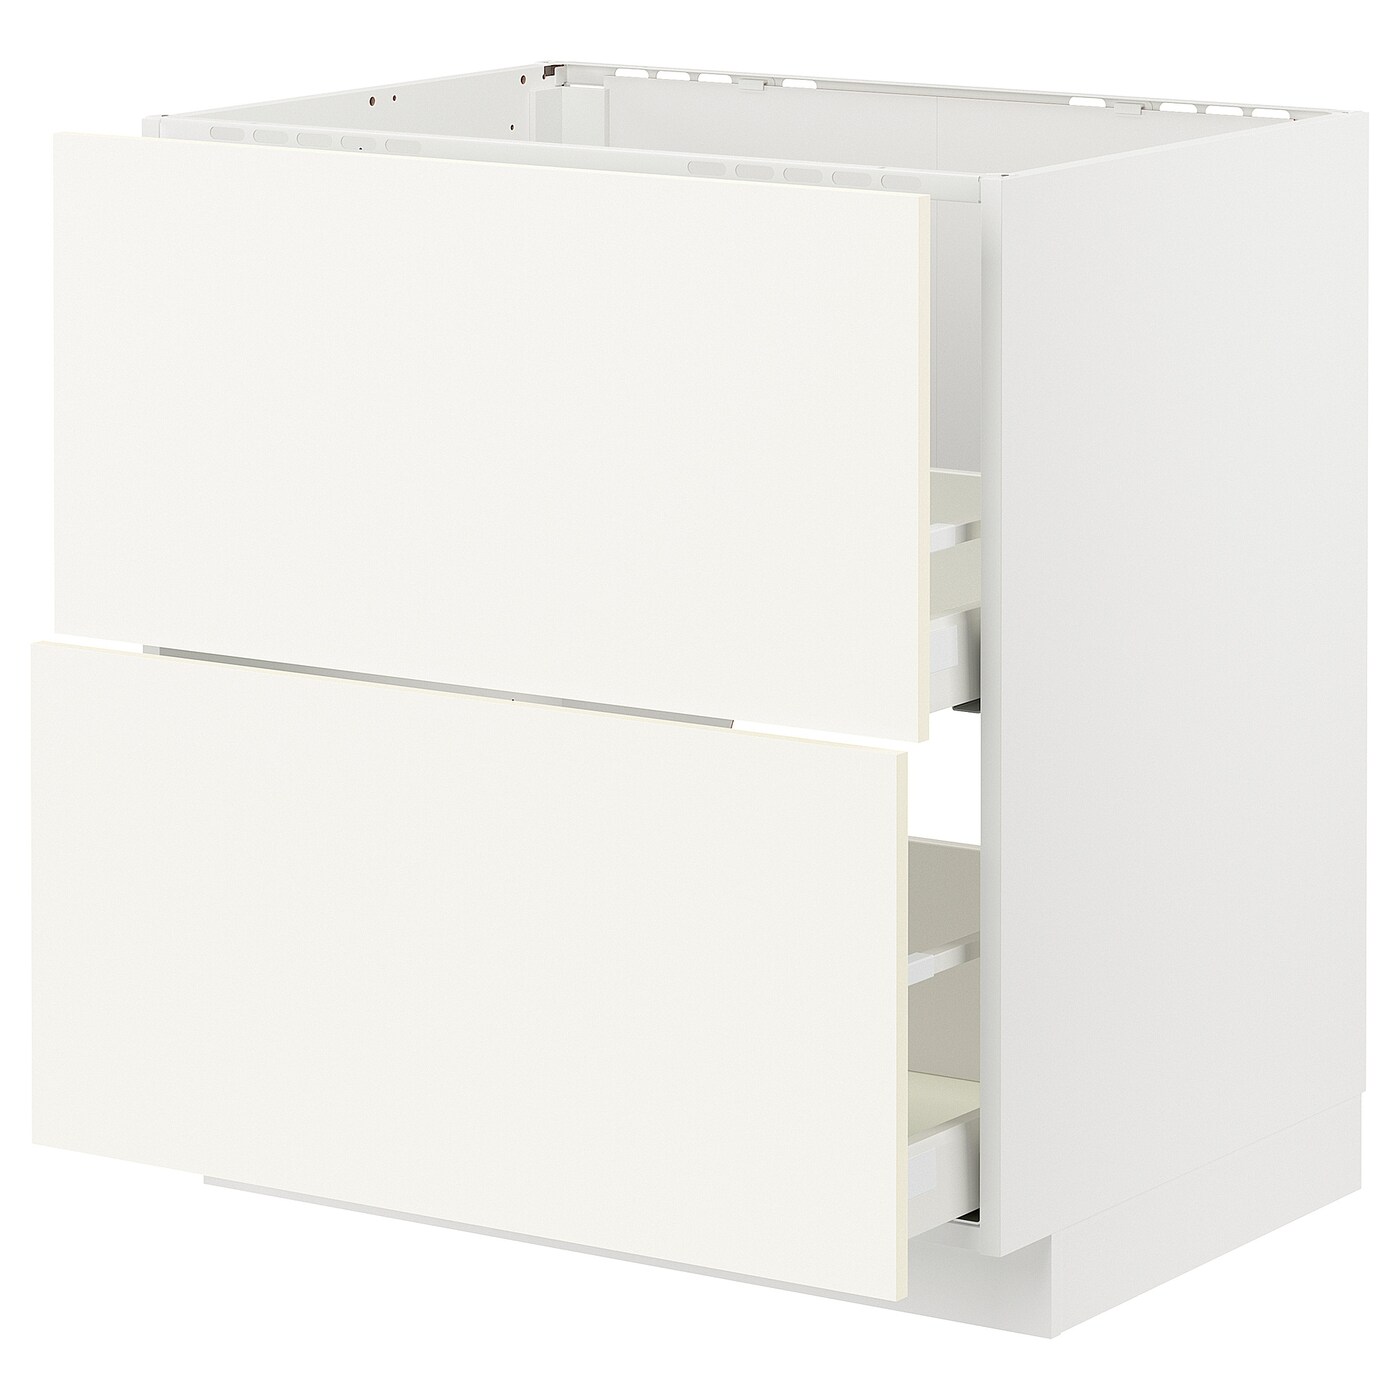 Напольный кухонный шкаф  - IKEA METOD MAXIMERA, 88x61,6x80см, белый, МЕТОД МАКСИМЕРА ИКЕА